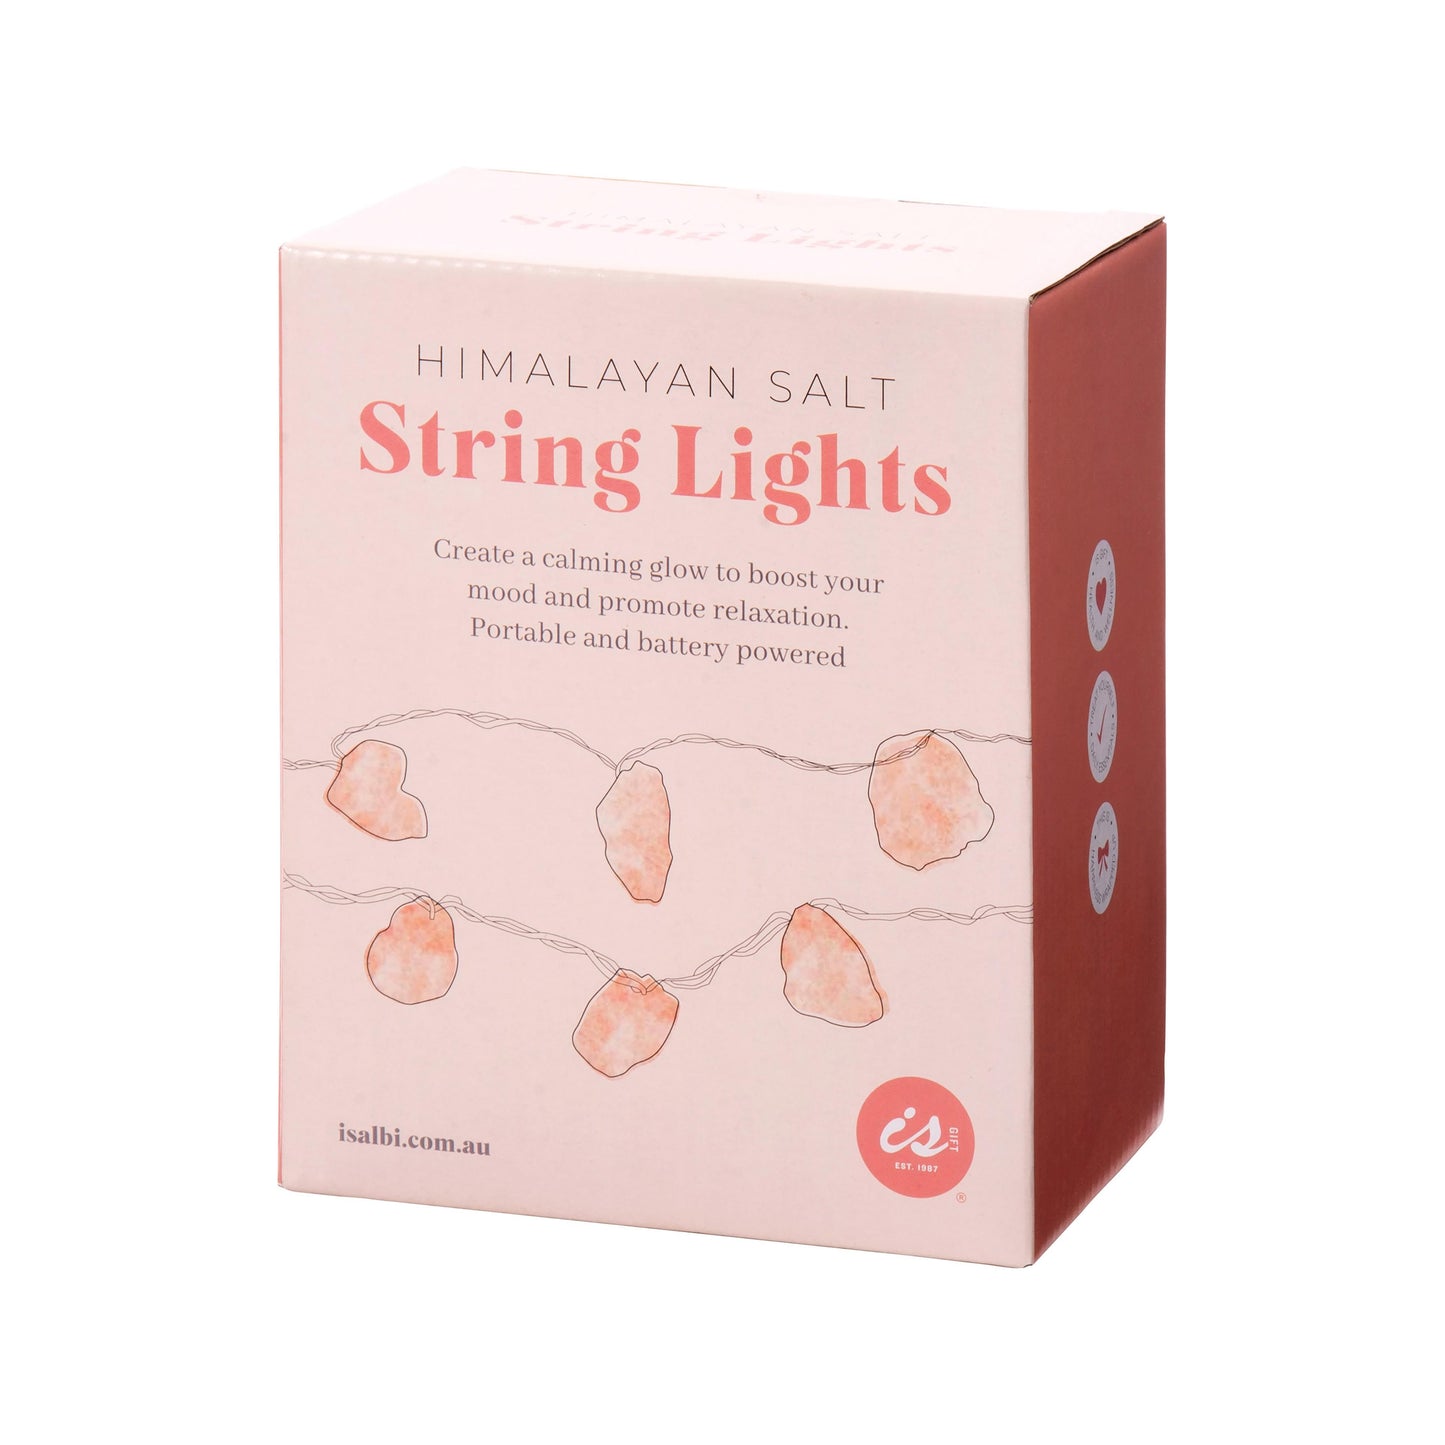 Himalayan salt string lights